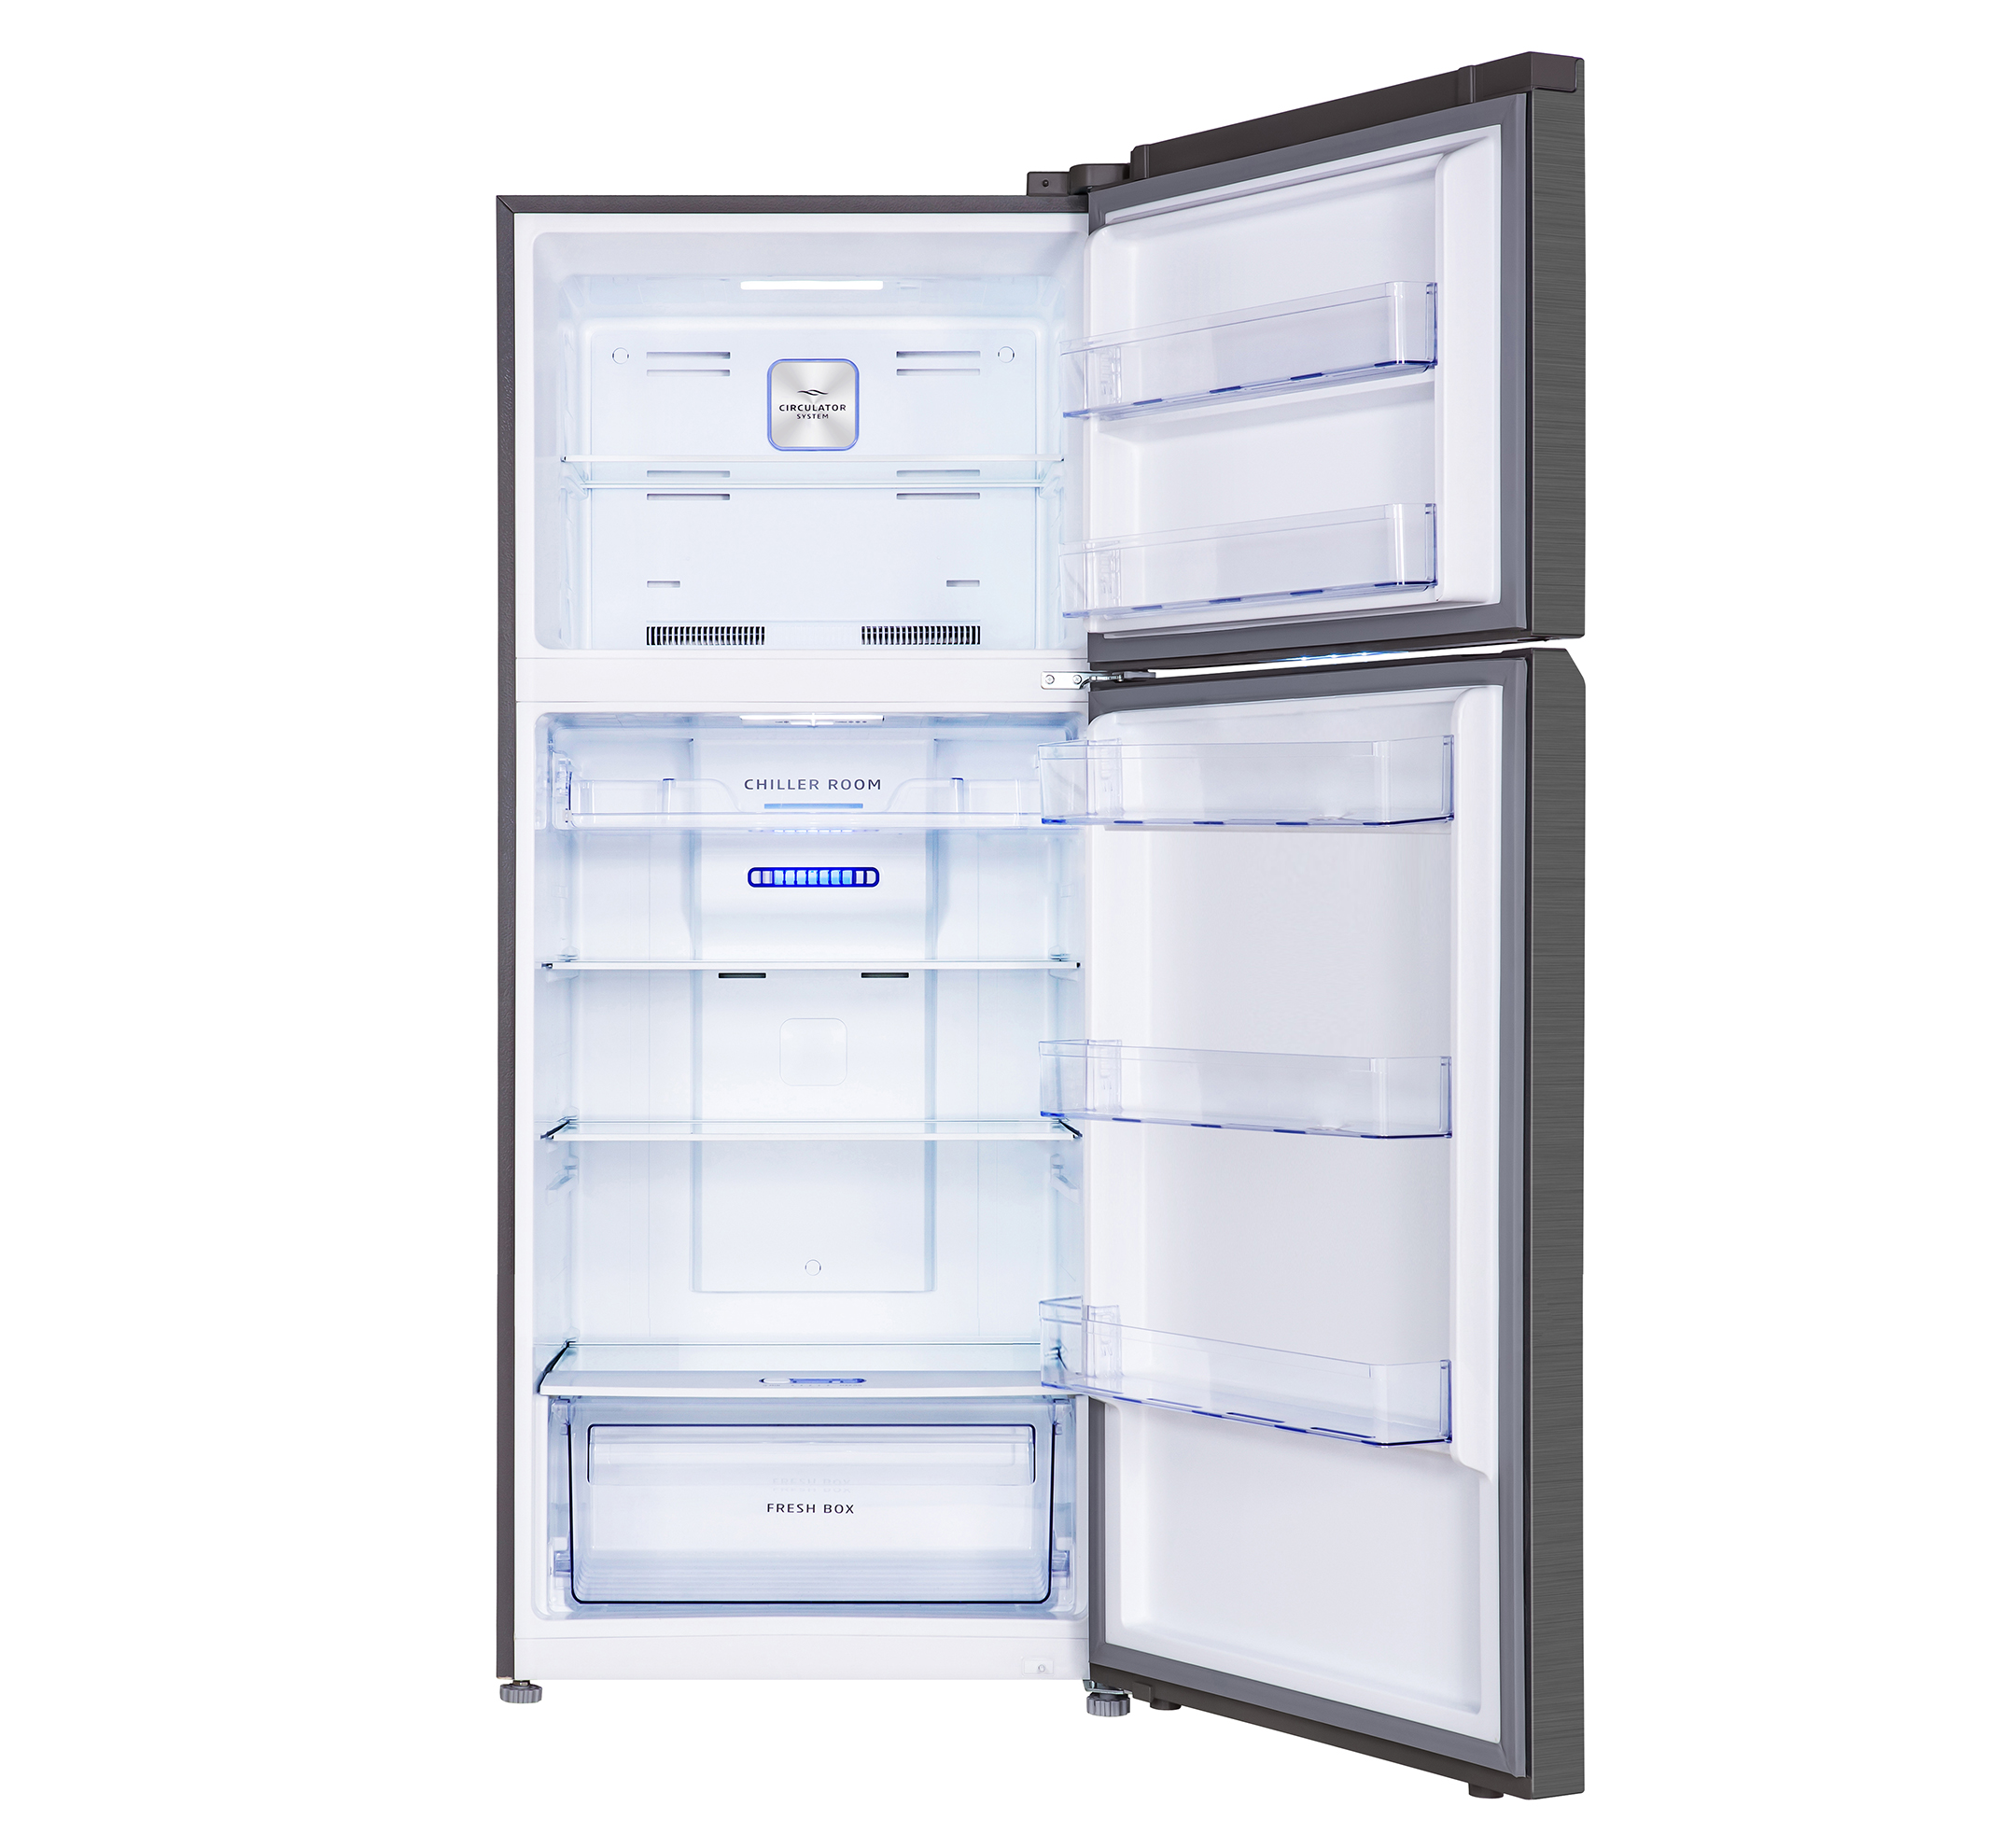 Refrigerator Double Door Model No. GR600KS Open